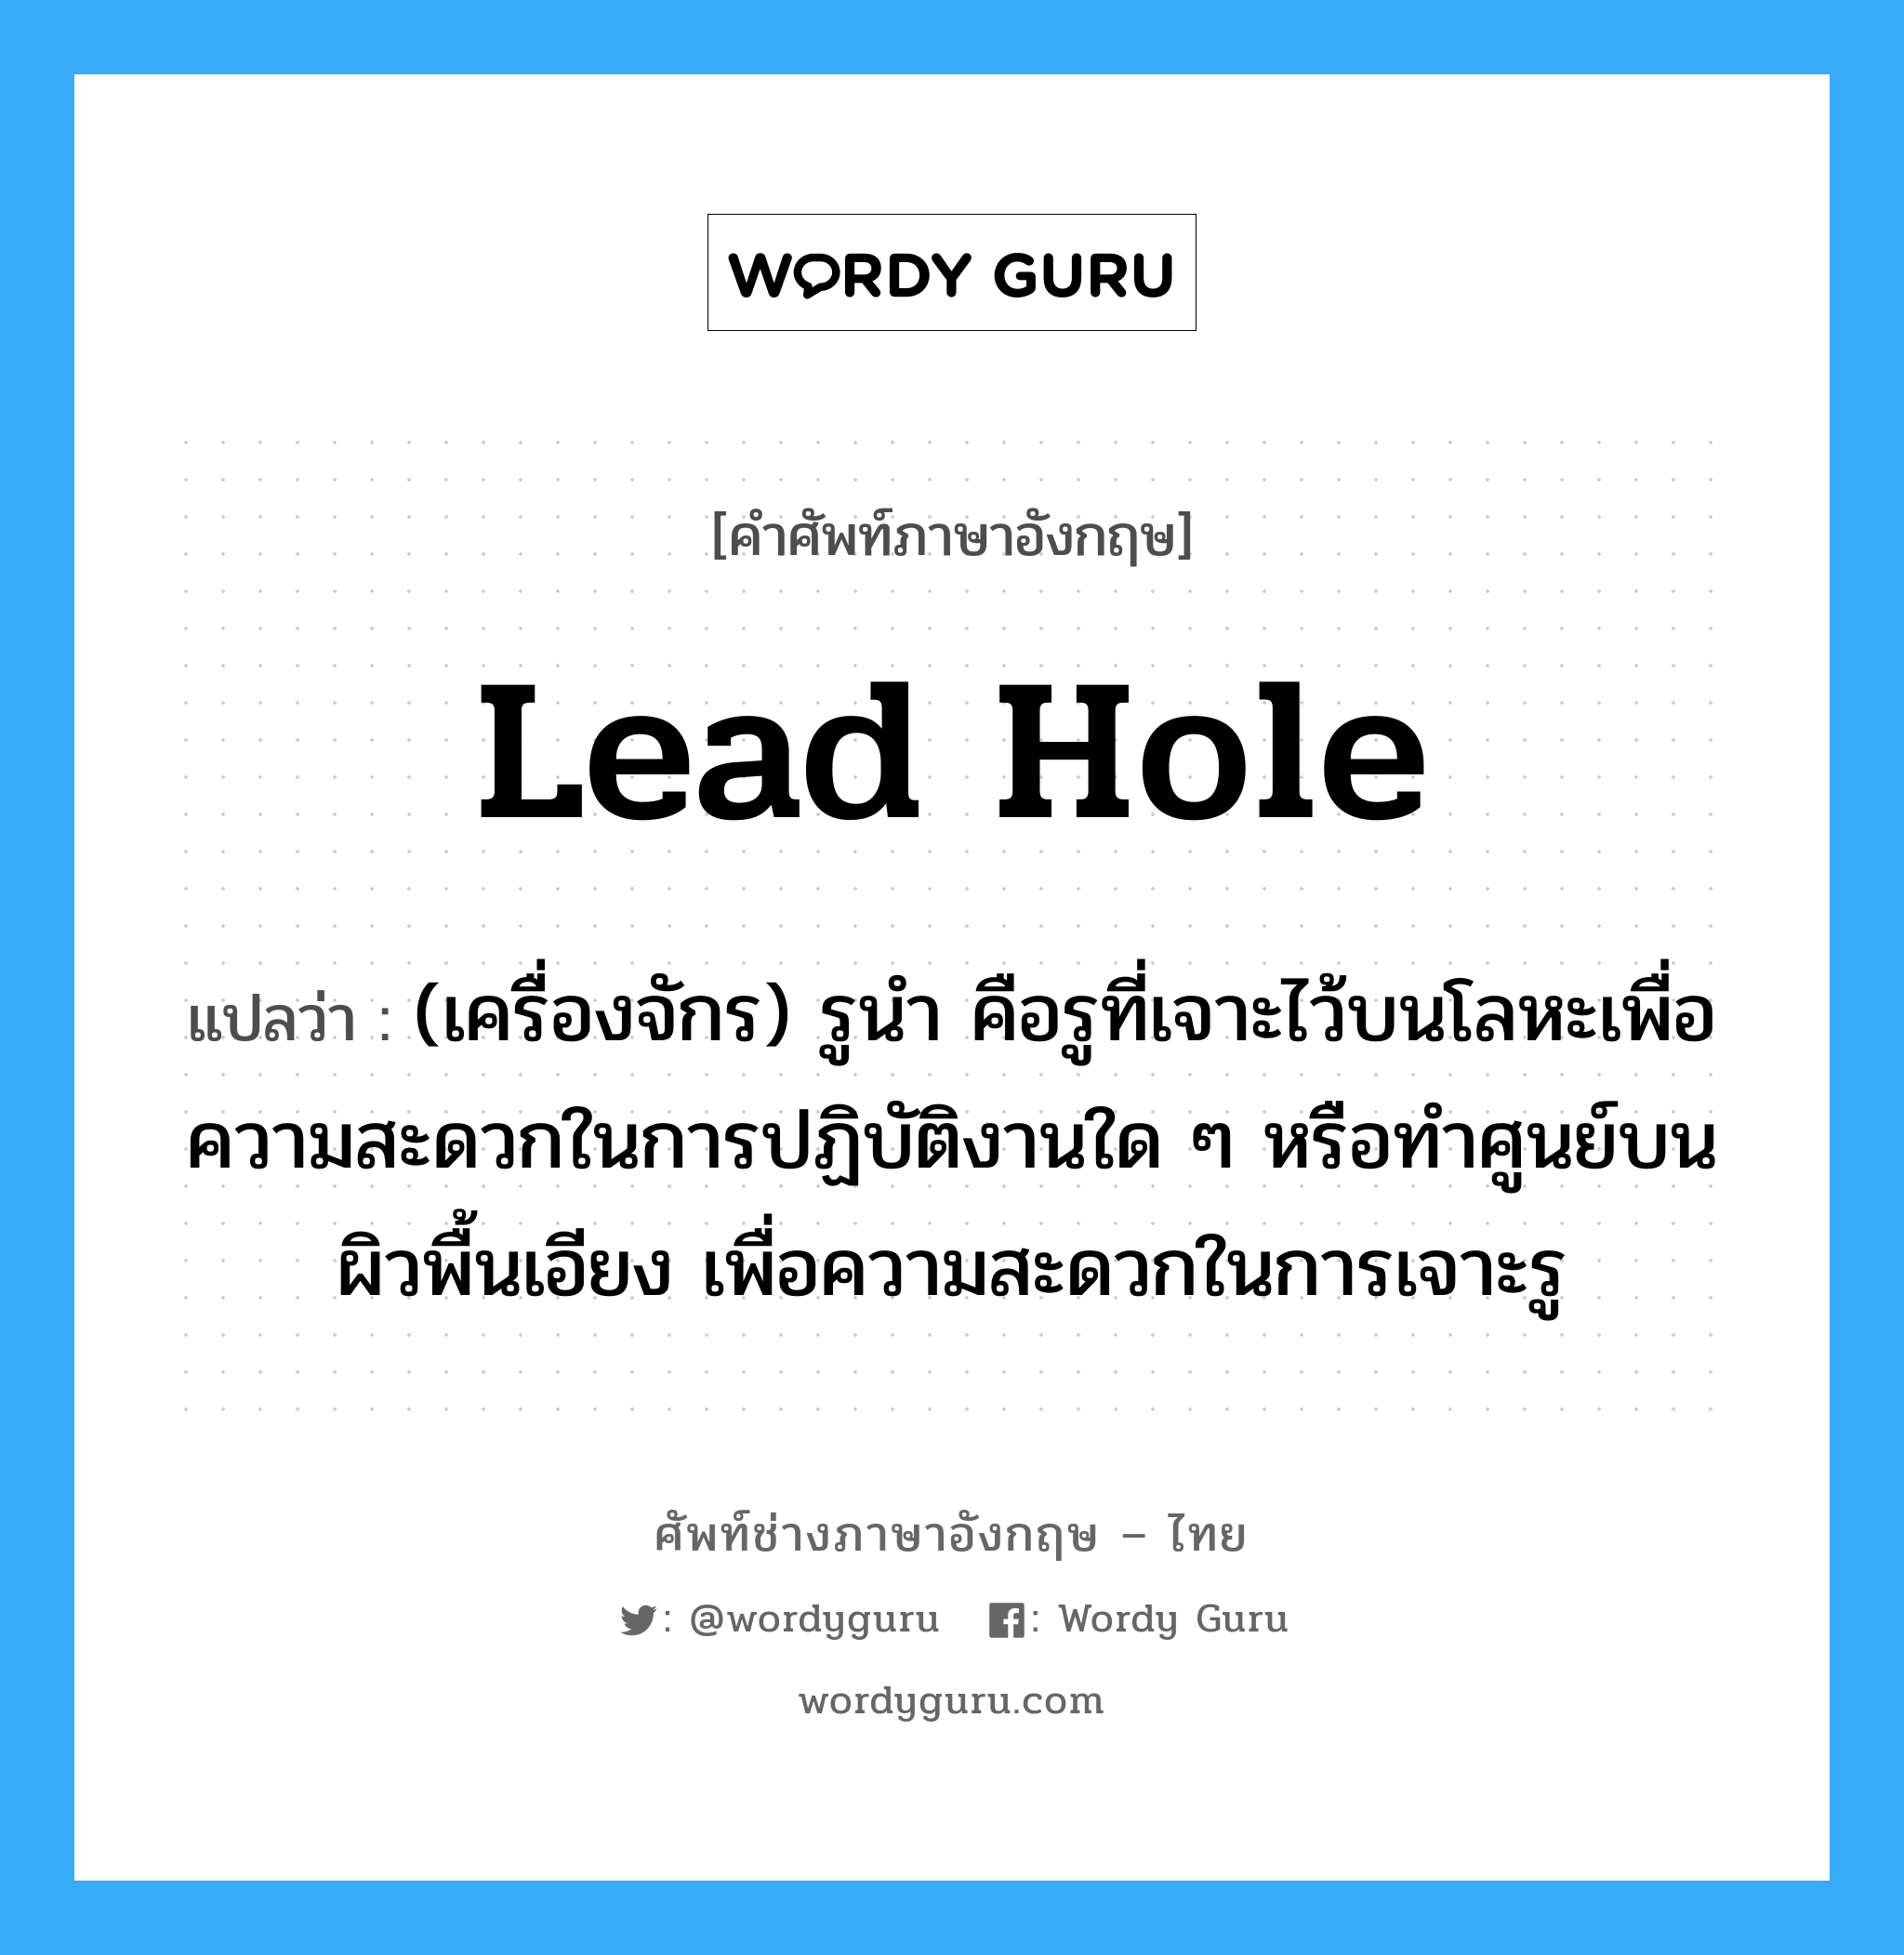 lead hole แปลว่า?, คำศัพท์ช่างภาษาอังกฤษ - ไทย lead hole คำศัพท์ภาษาอังกฤษ lead hole แปลว่า (เครื่องจักร) รูนำ คือรูที่เจาะไว้บนโลหะเพื่อความสะดวกในการปฏิบัติงานใด ๆ หรือทำศูนย์บนผิวพื้นเอียง เพื่อความสะดวกในการเจาะรู